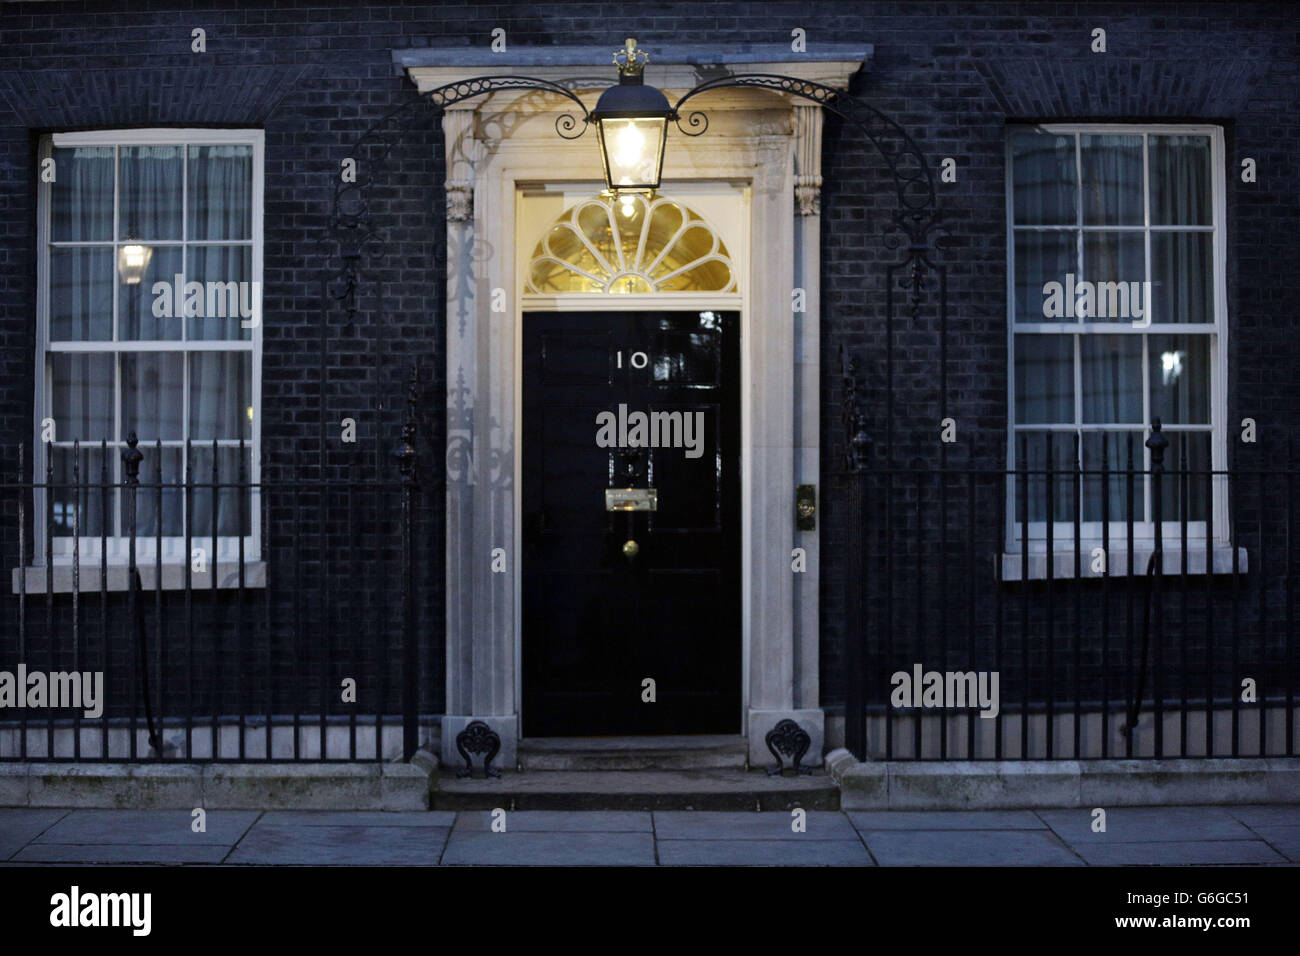 Une lumière au-dessus de la porte du 10 Downing Street, la résidence officielle du Premier Ministre, en tant que chef de l'UKIP Nigel Farage a remporté la victoire pour la campagne de congé dans l'Union européenne référendum. Banque D'Images